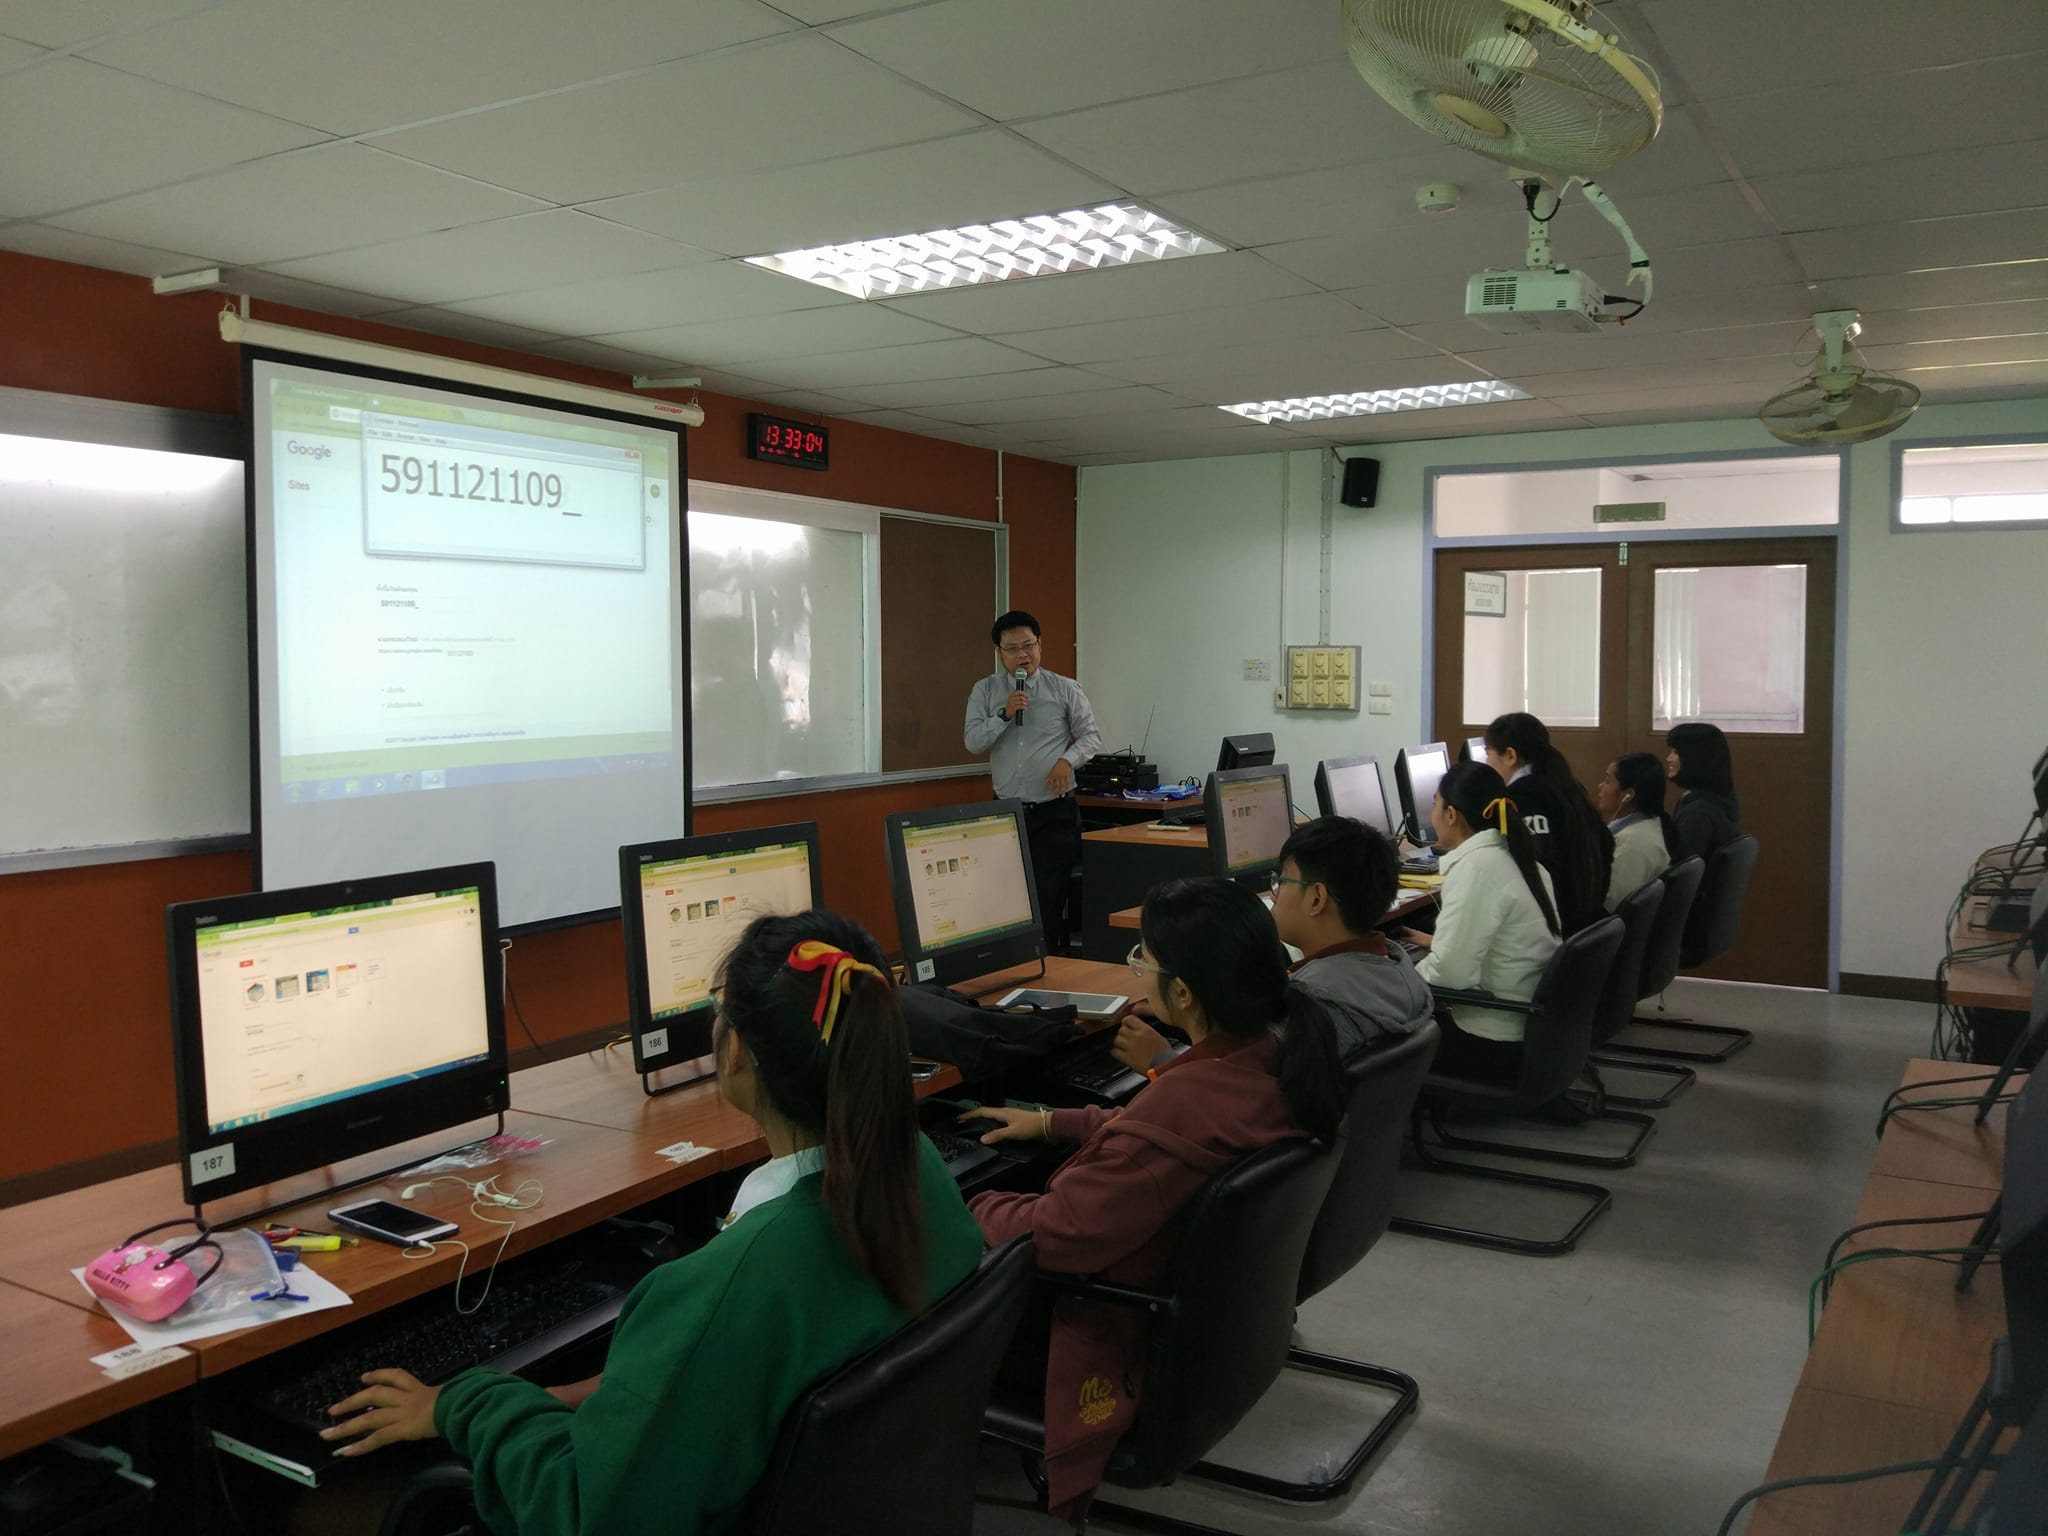 ภาพที่ 3. วันที่ 6 ธันวาคม 2560 โครงการเสริมสร้างคุณลักษณะบัณฑิตของนักศึกษาโปรแกรมวิชาภาษาจีน กิจกรรมอบรมเชิงปฏิบัติการเพื่อพัฒนาสื่อนวัตกรรมการเรียนรู้สำหรับครูภาษาจีน ณ ห้องปฏิบัติการคอมพิวเตอร์ 1 ชั้น 4 ตึกครุศาสตร์